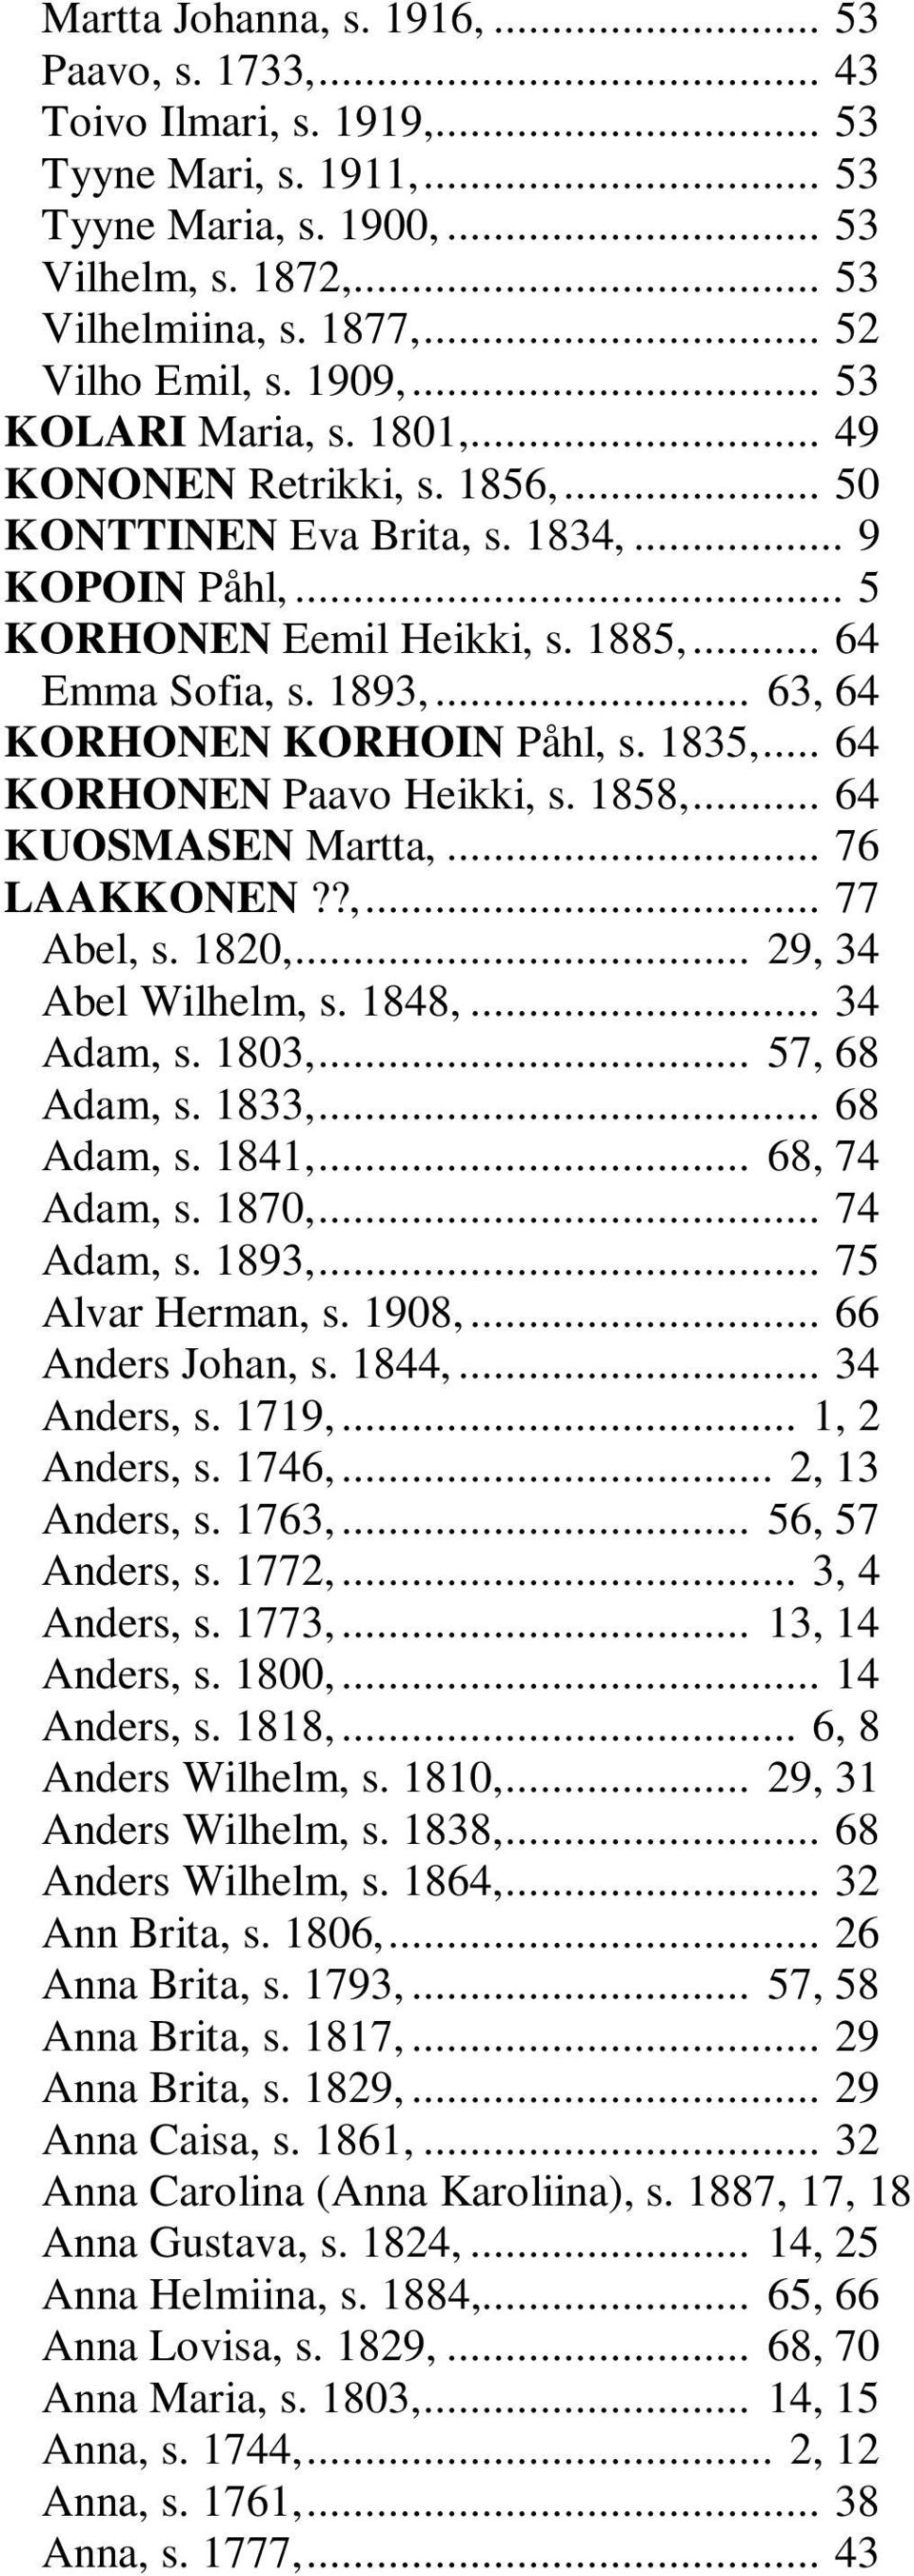 1893,... 63, 64 KORHONEN KORHOIN Påhl, s. 1835,... 64 KORHONEN Paavo Heikki, s. 1858,... 64 KUOSMASEN Martta,... 76 LAAKKONEN??,... 77 Abel, s. 1820,... 29, 34 Abel Wilhelm, s. 1848,... 34 Adam, s.